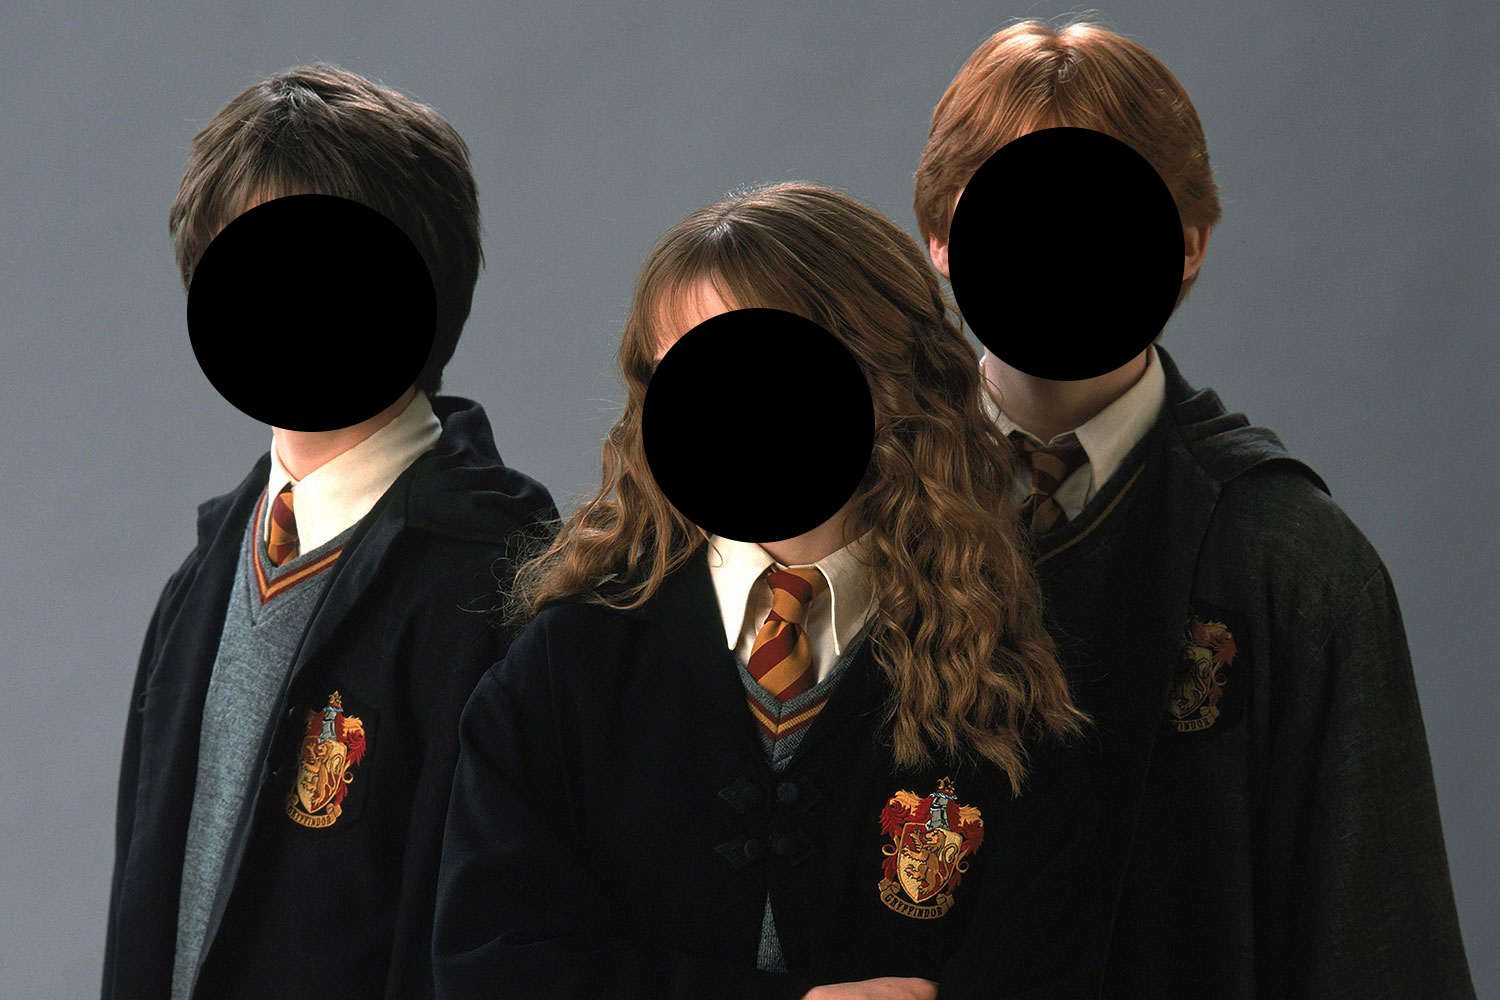 Buzz sobre reboot de "Harry Potter" ganha força no Reino Unido